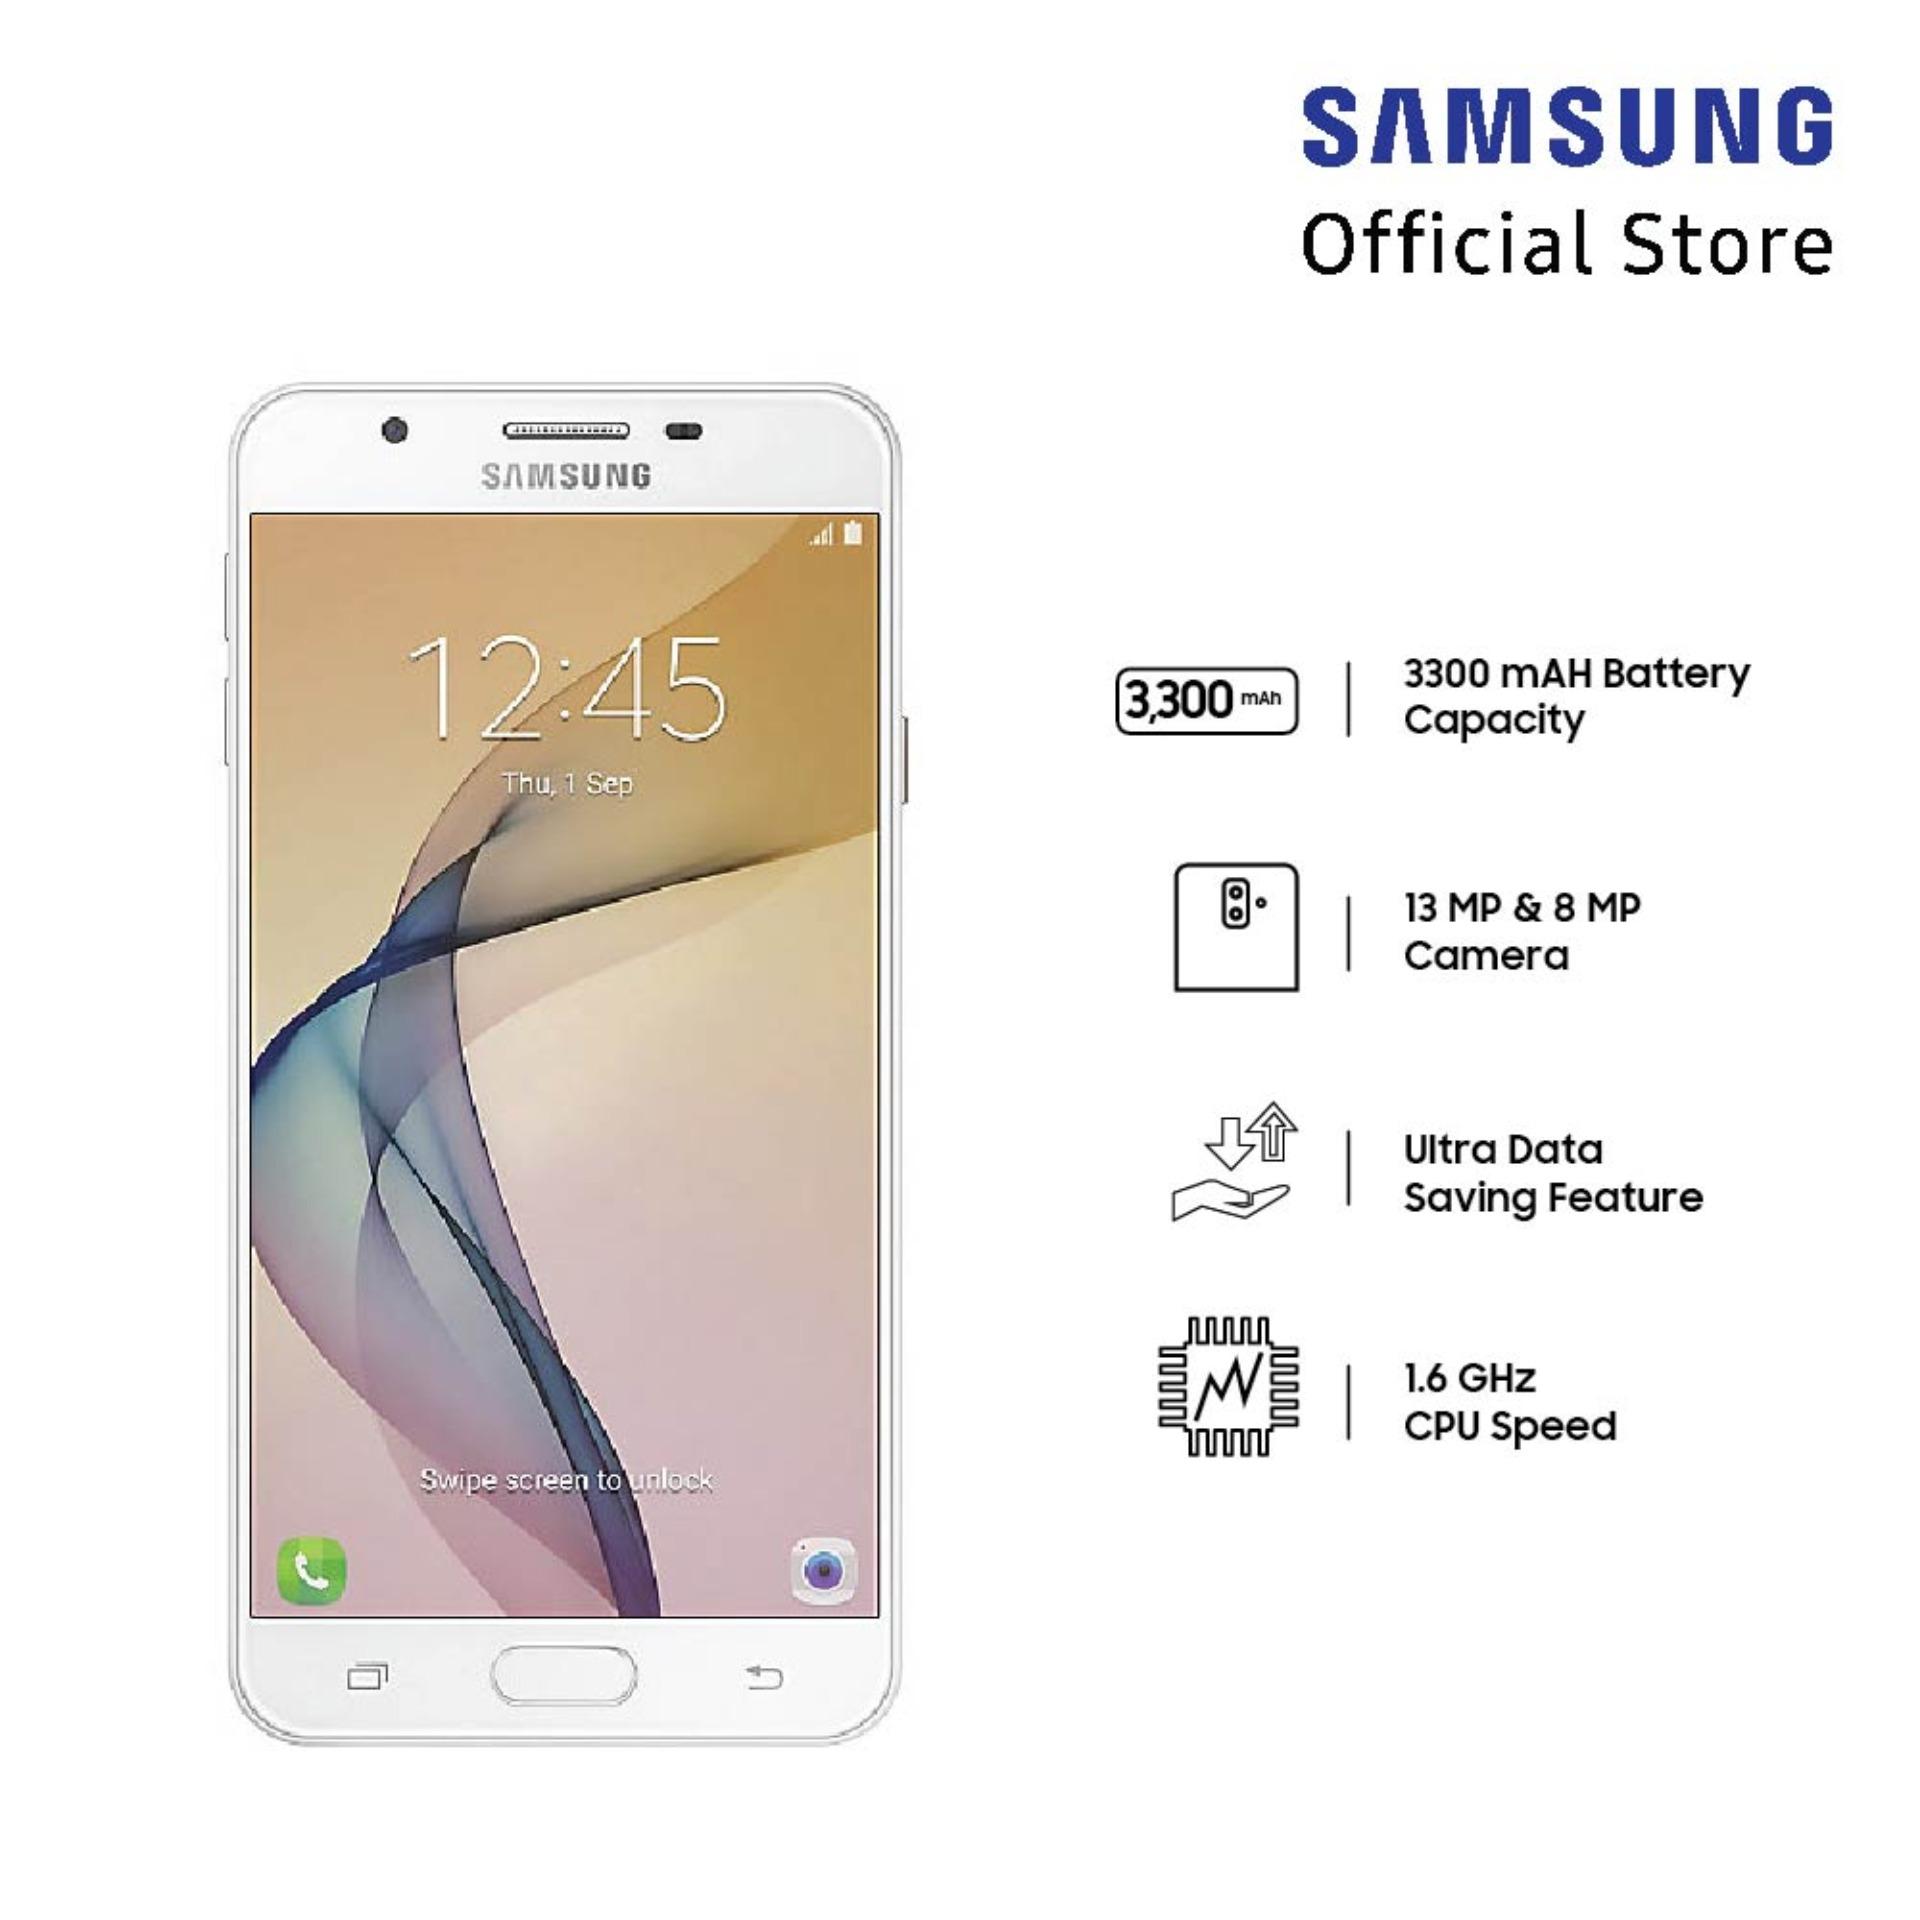 Samsung Galaxy J7 Prime - Putih Emas 3/32 GB